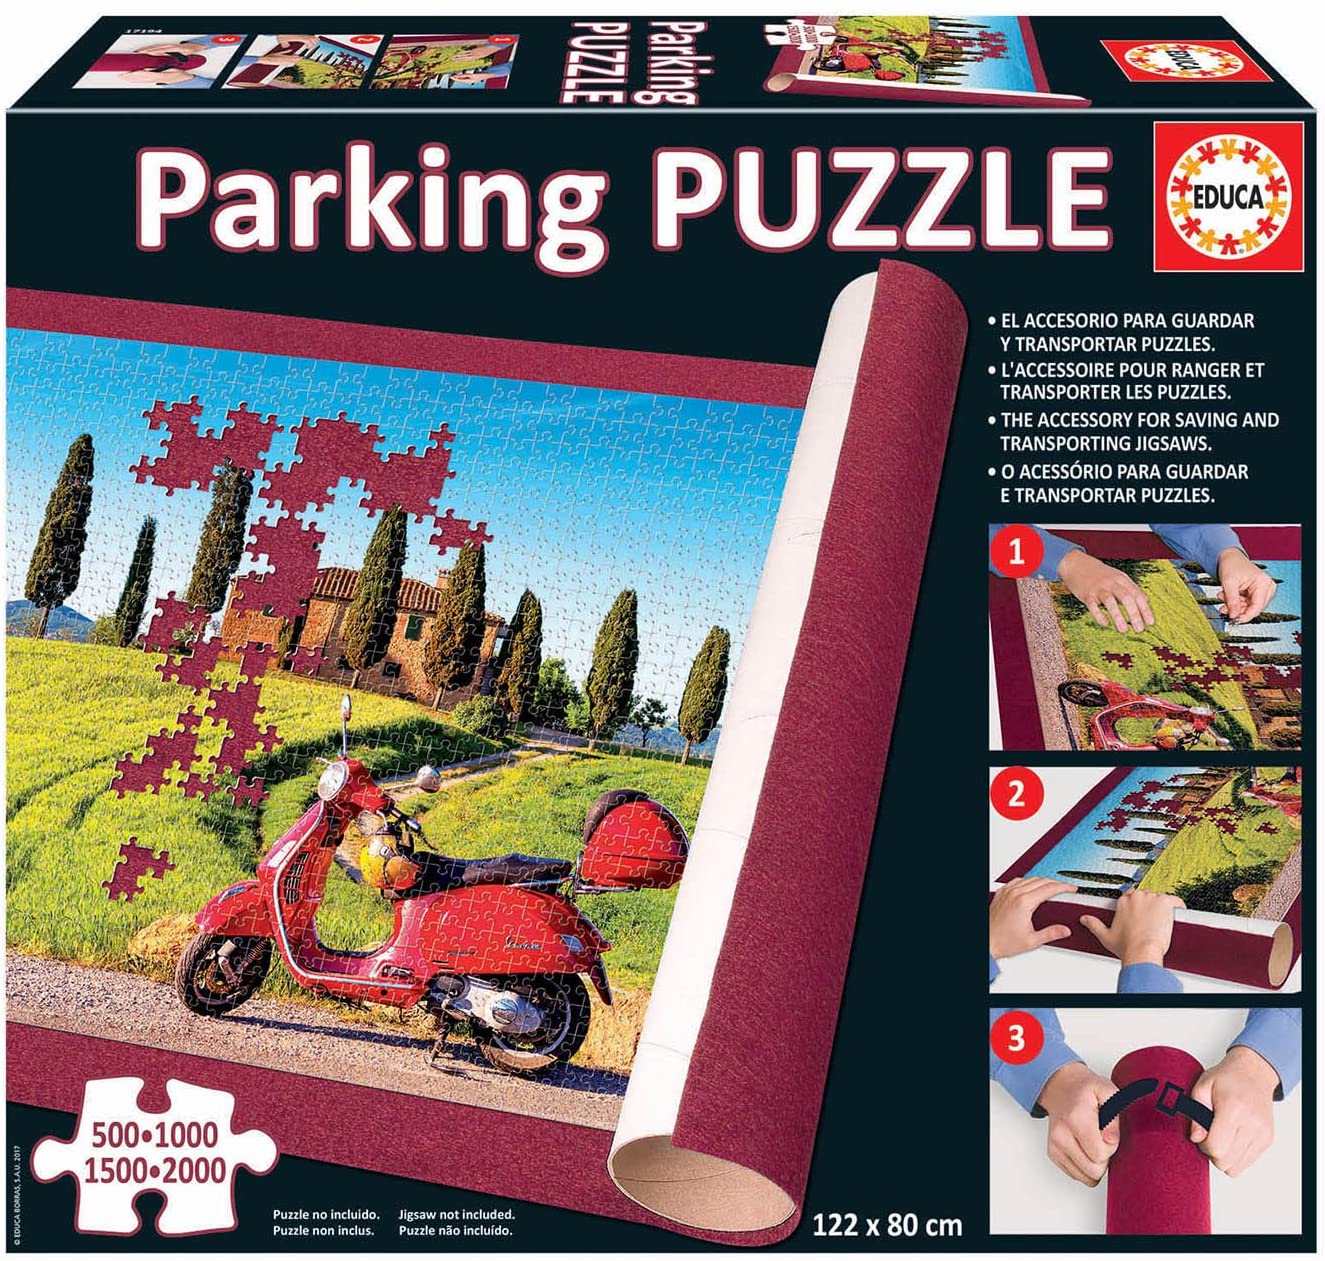 Educa 17194 Puzzle Parking Puzzle  Puzzle 500-2000pcs